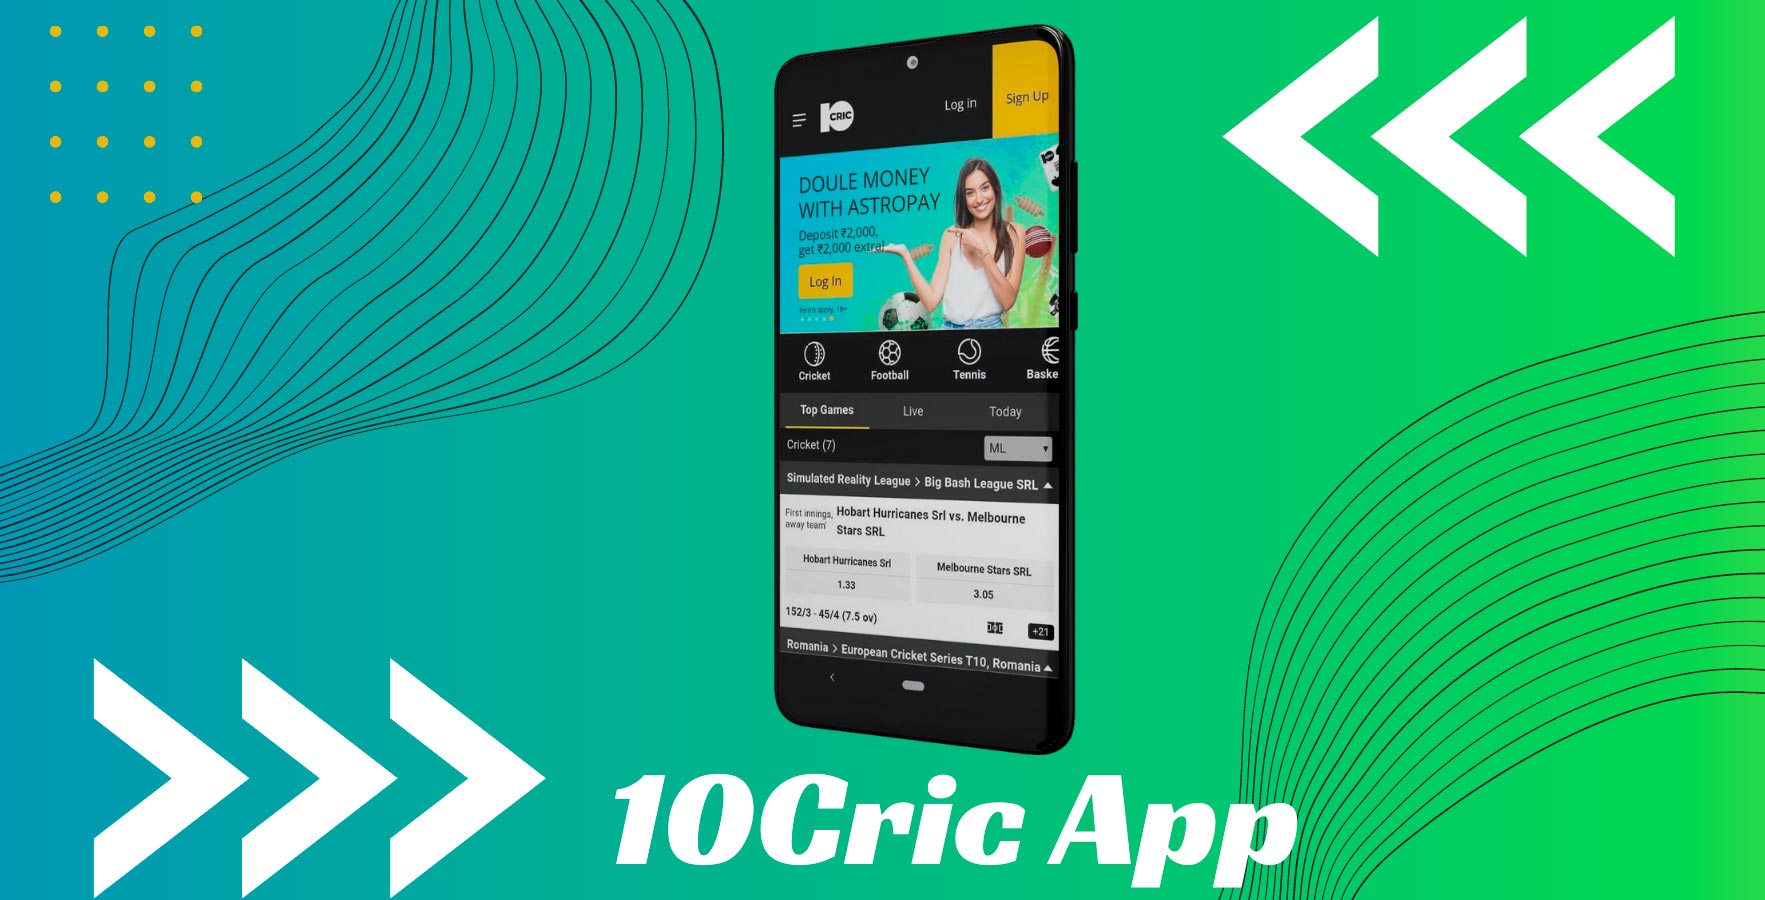 10Cric App in India